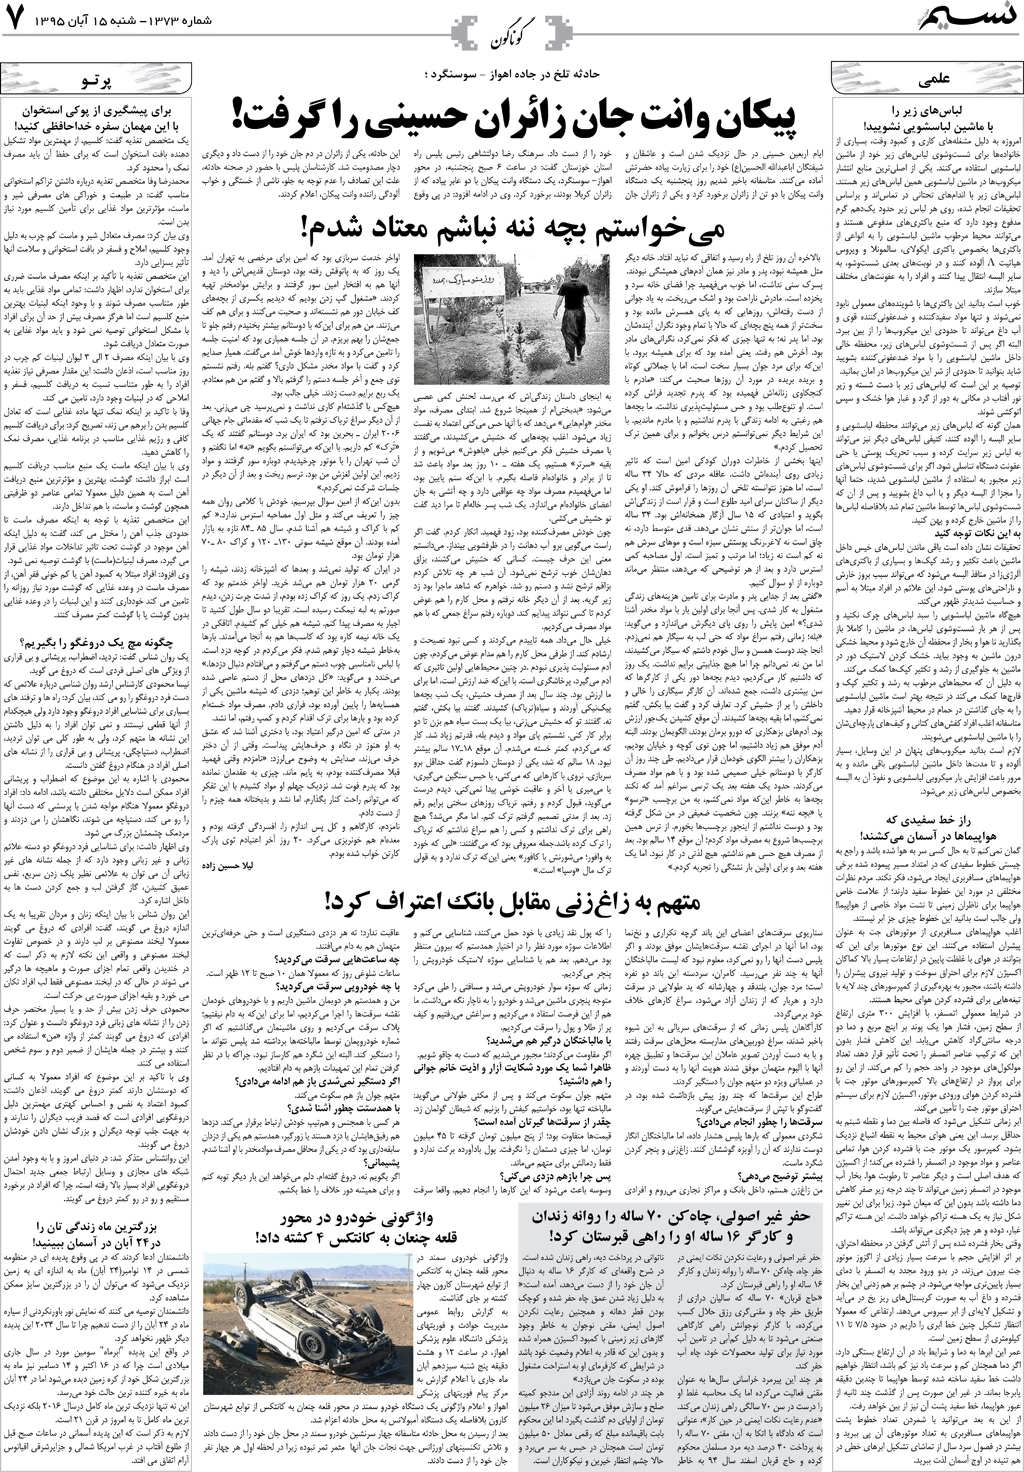 صفحه گوناگون روزنامه نسیم شماره 1373